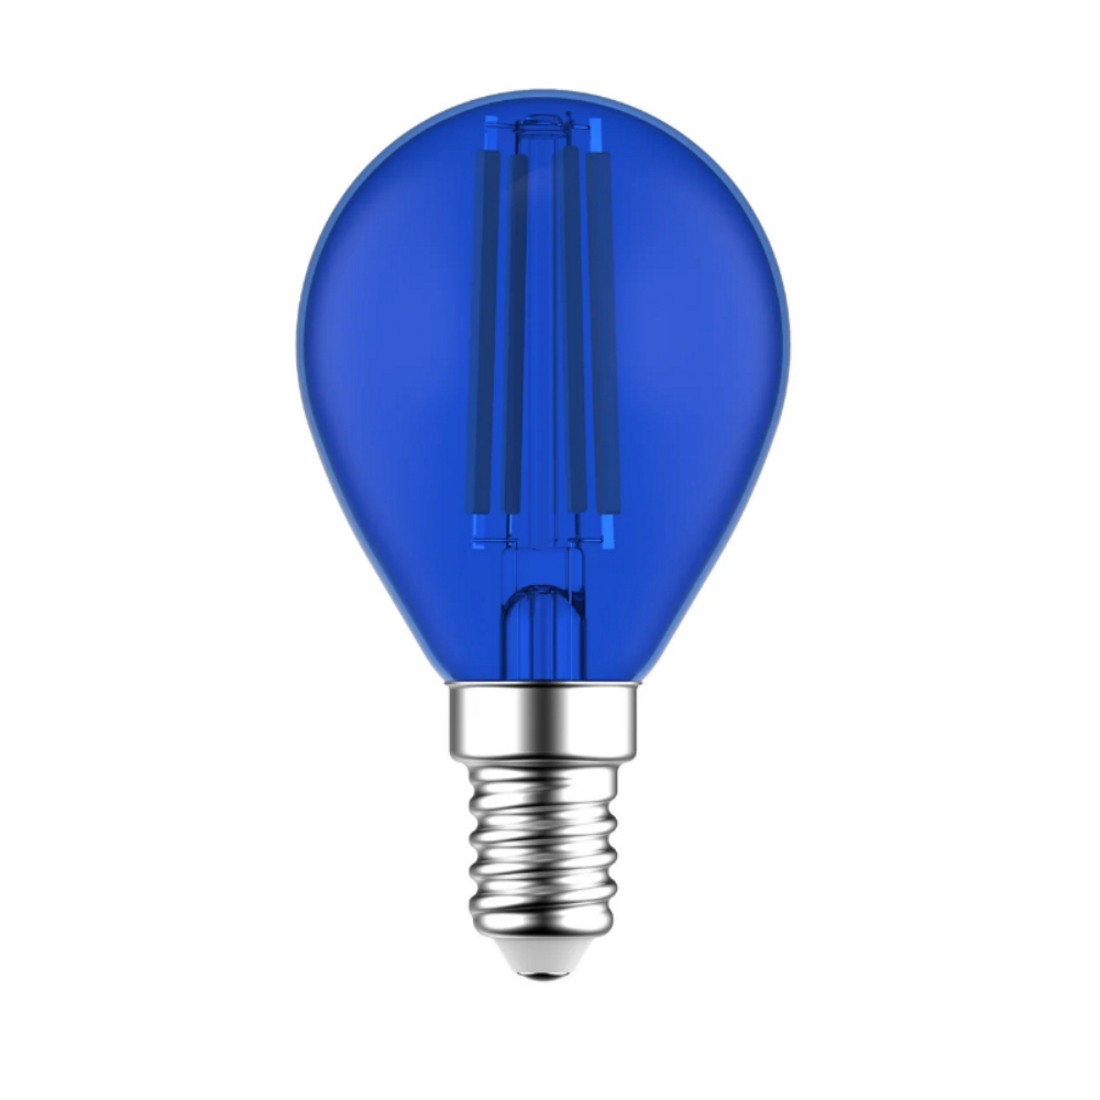 Blue - Lampadina LED decorativa colorata blu, attacco E14, 4,5W